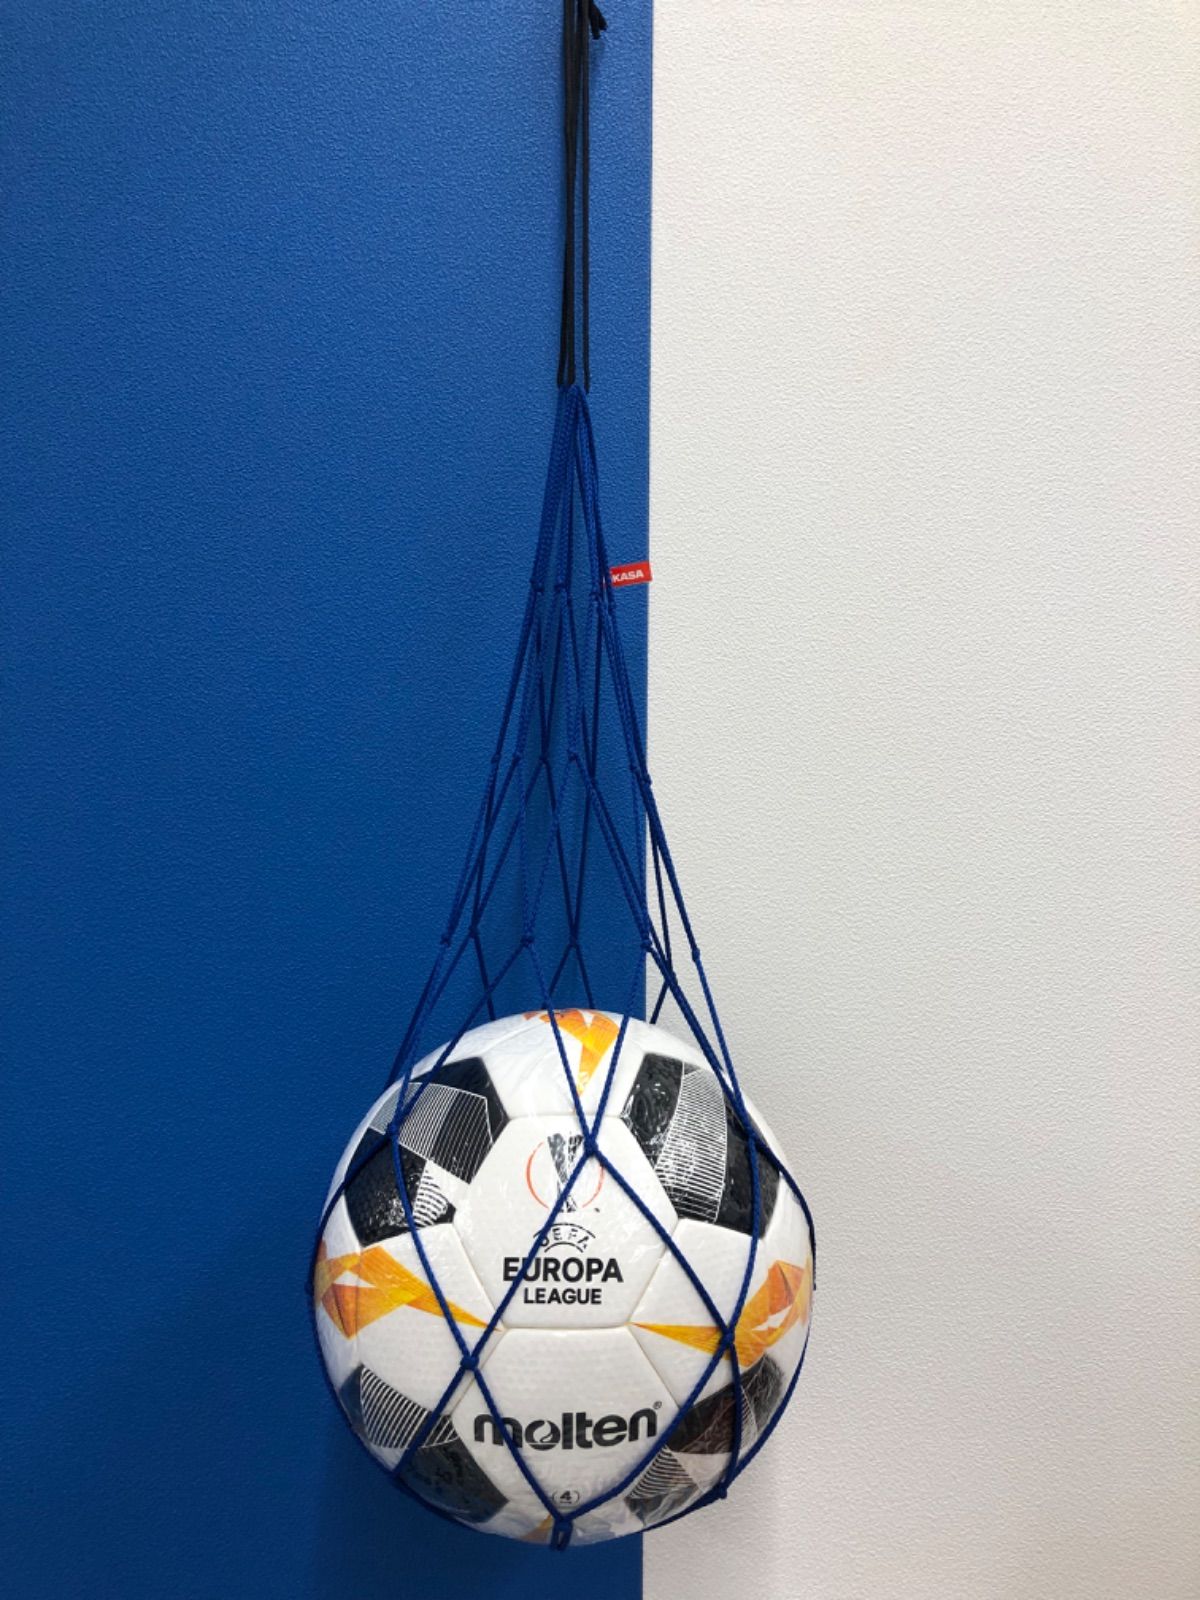 モルテン（Molten） サッカーボール4号球 ペレーダ3000 ホワイト×メタリックブルー